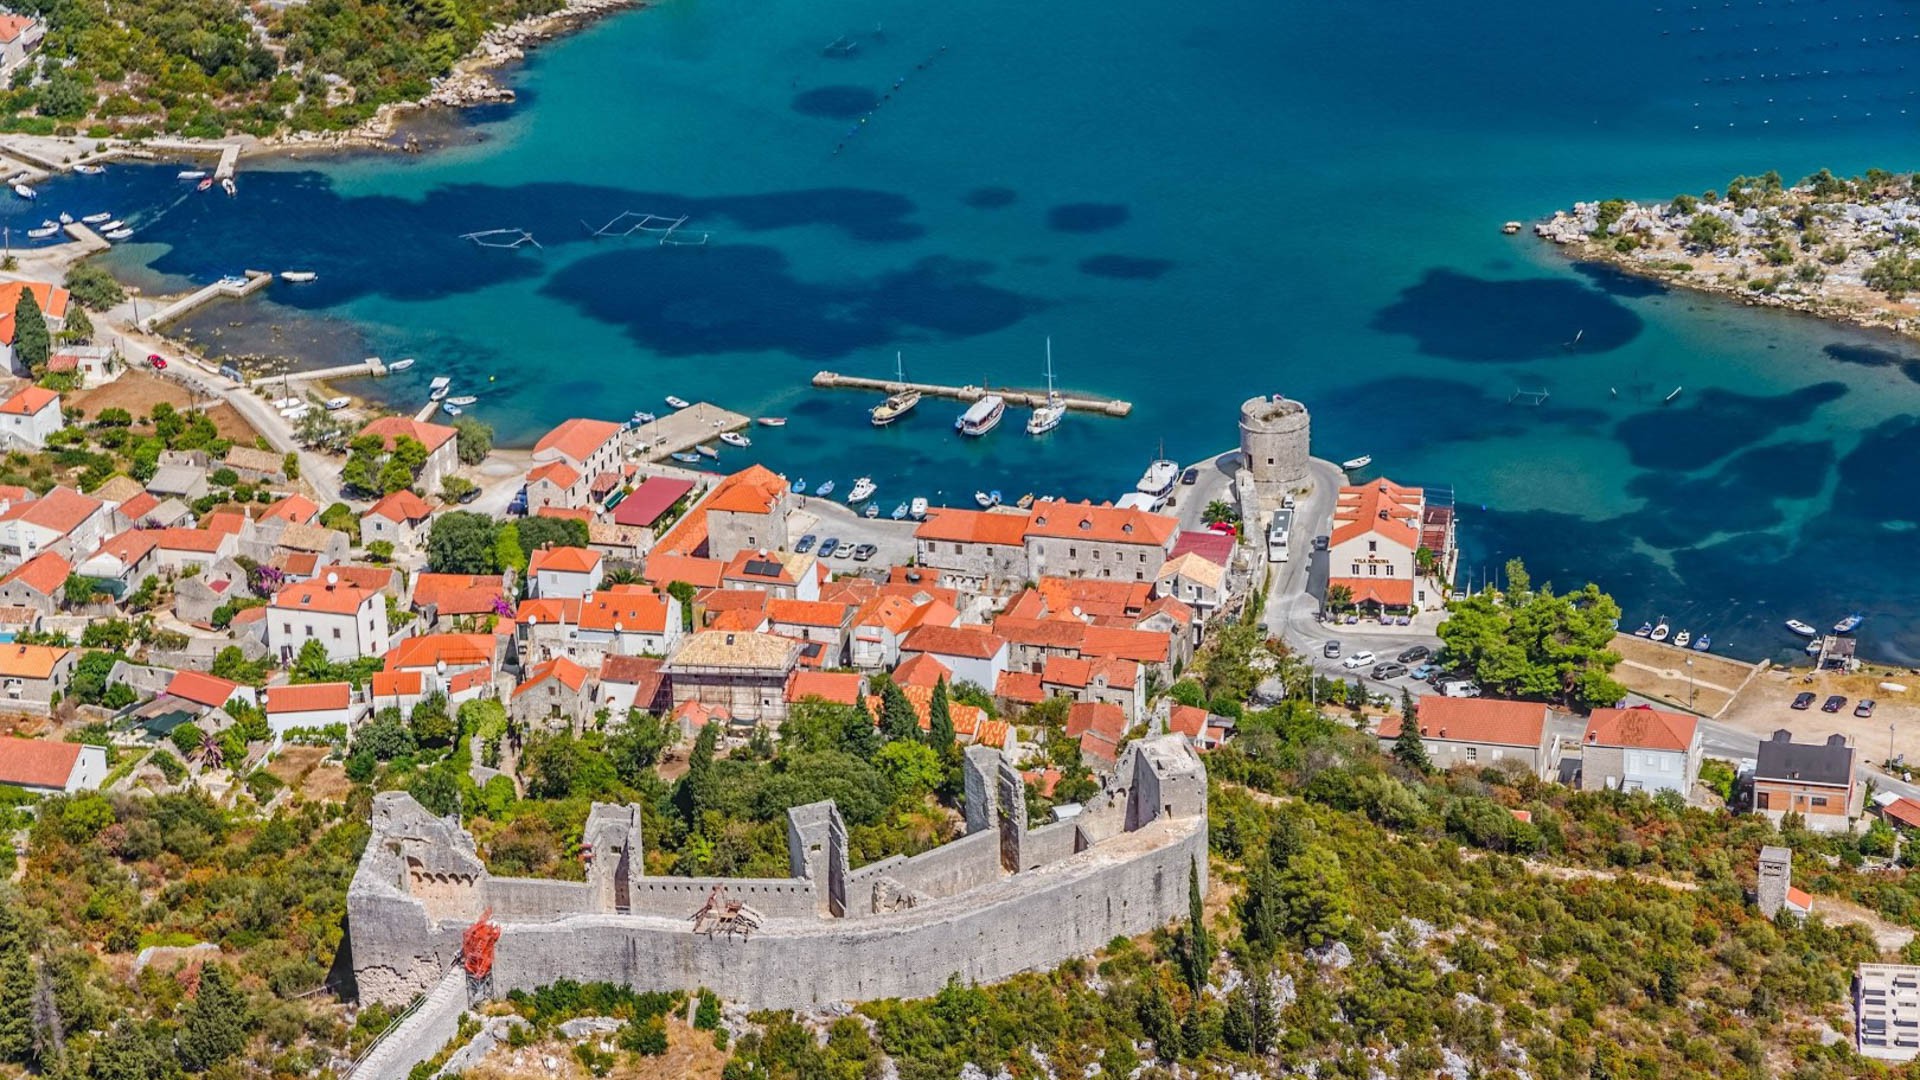 Ston - Adriatic Sea | Croatia Cruise Croatia Cruise